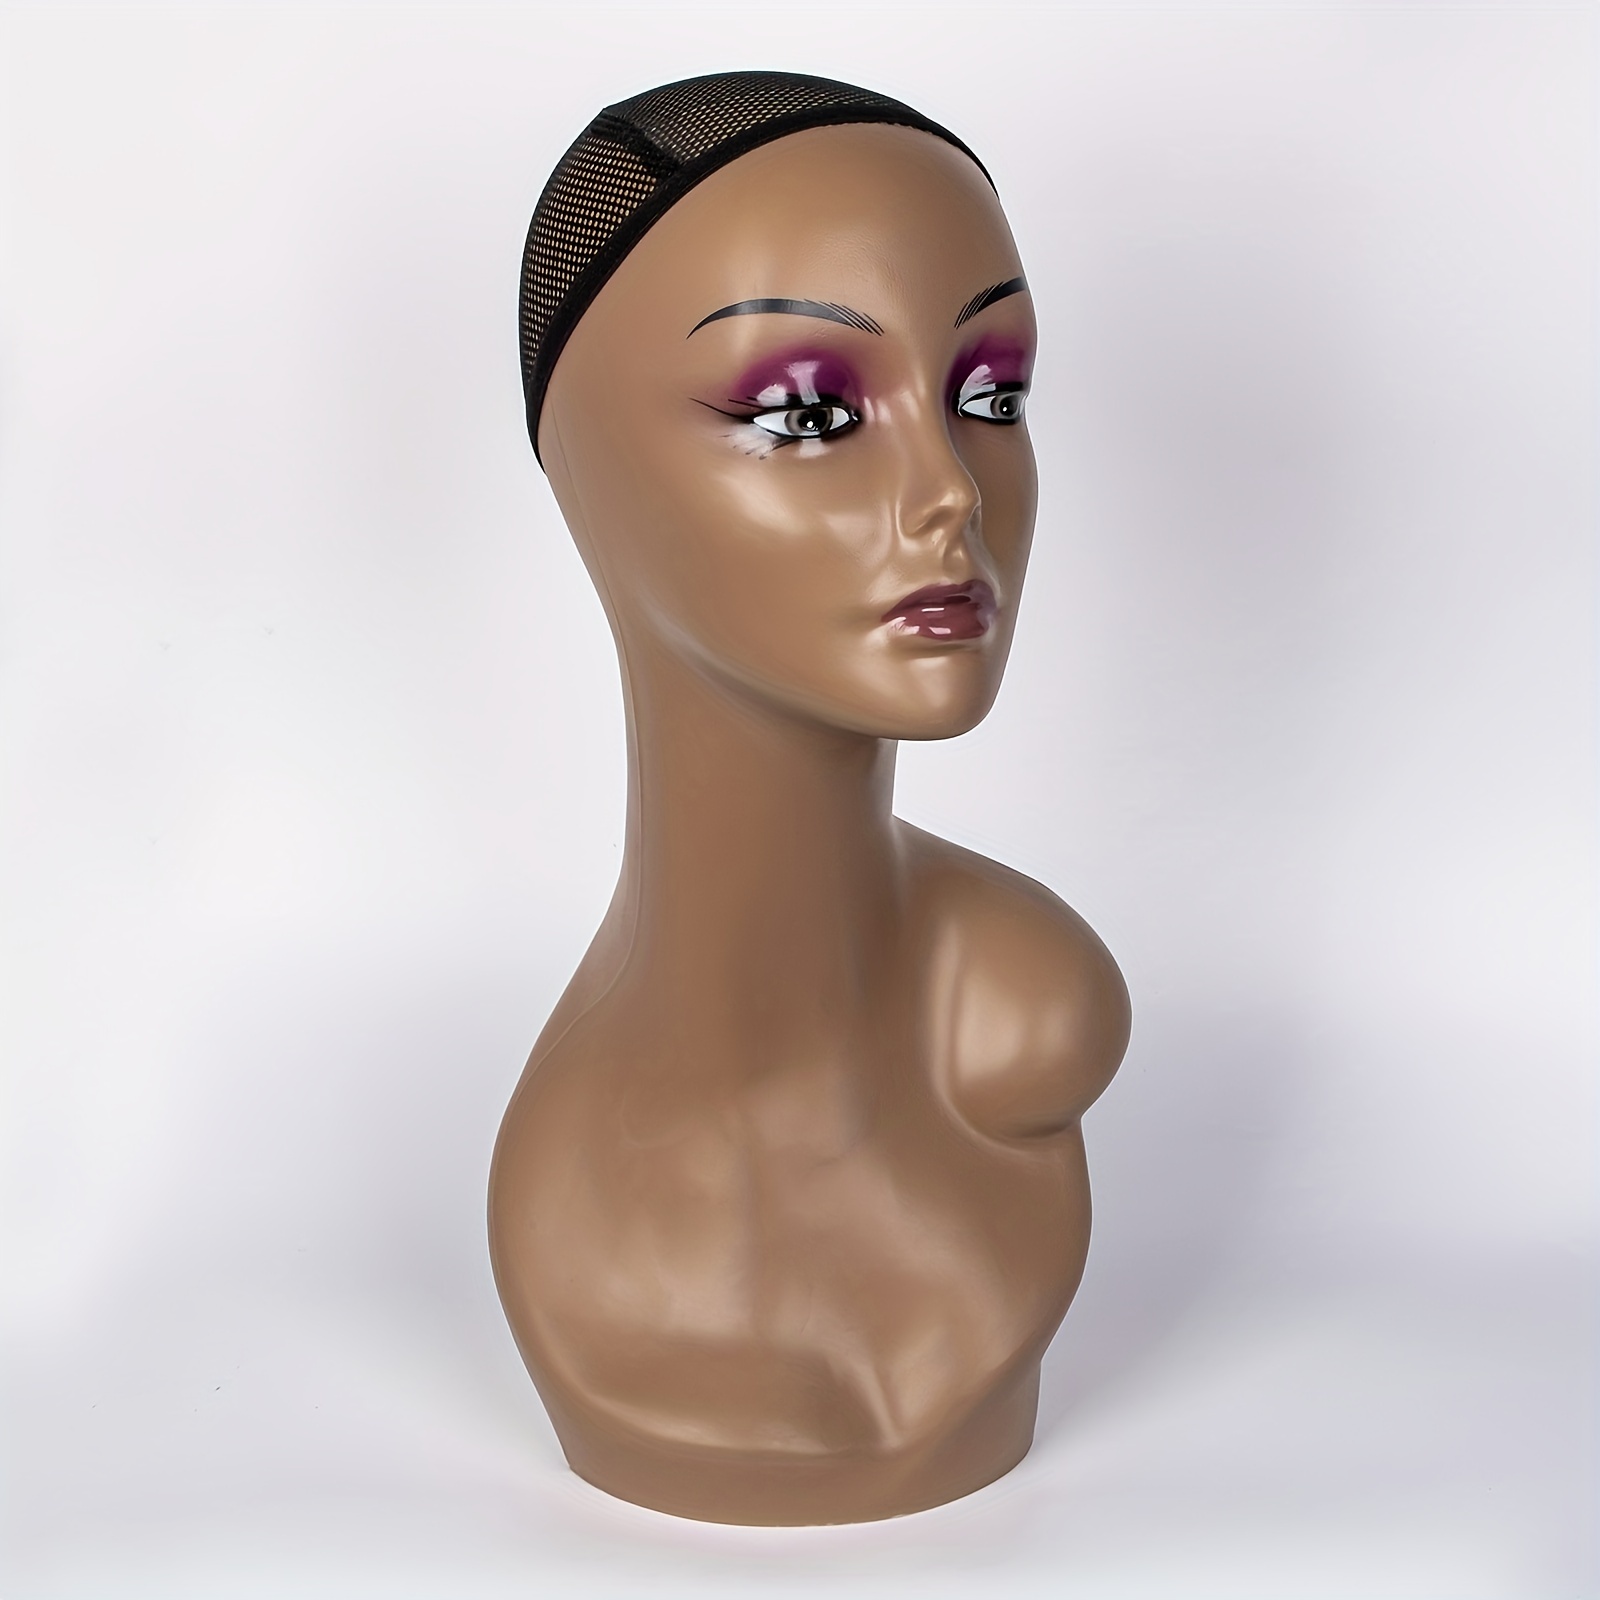 Foam Wig Head - Tall Female Foam Mannequin Model Head For Hats Wig